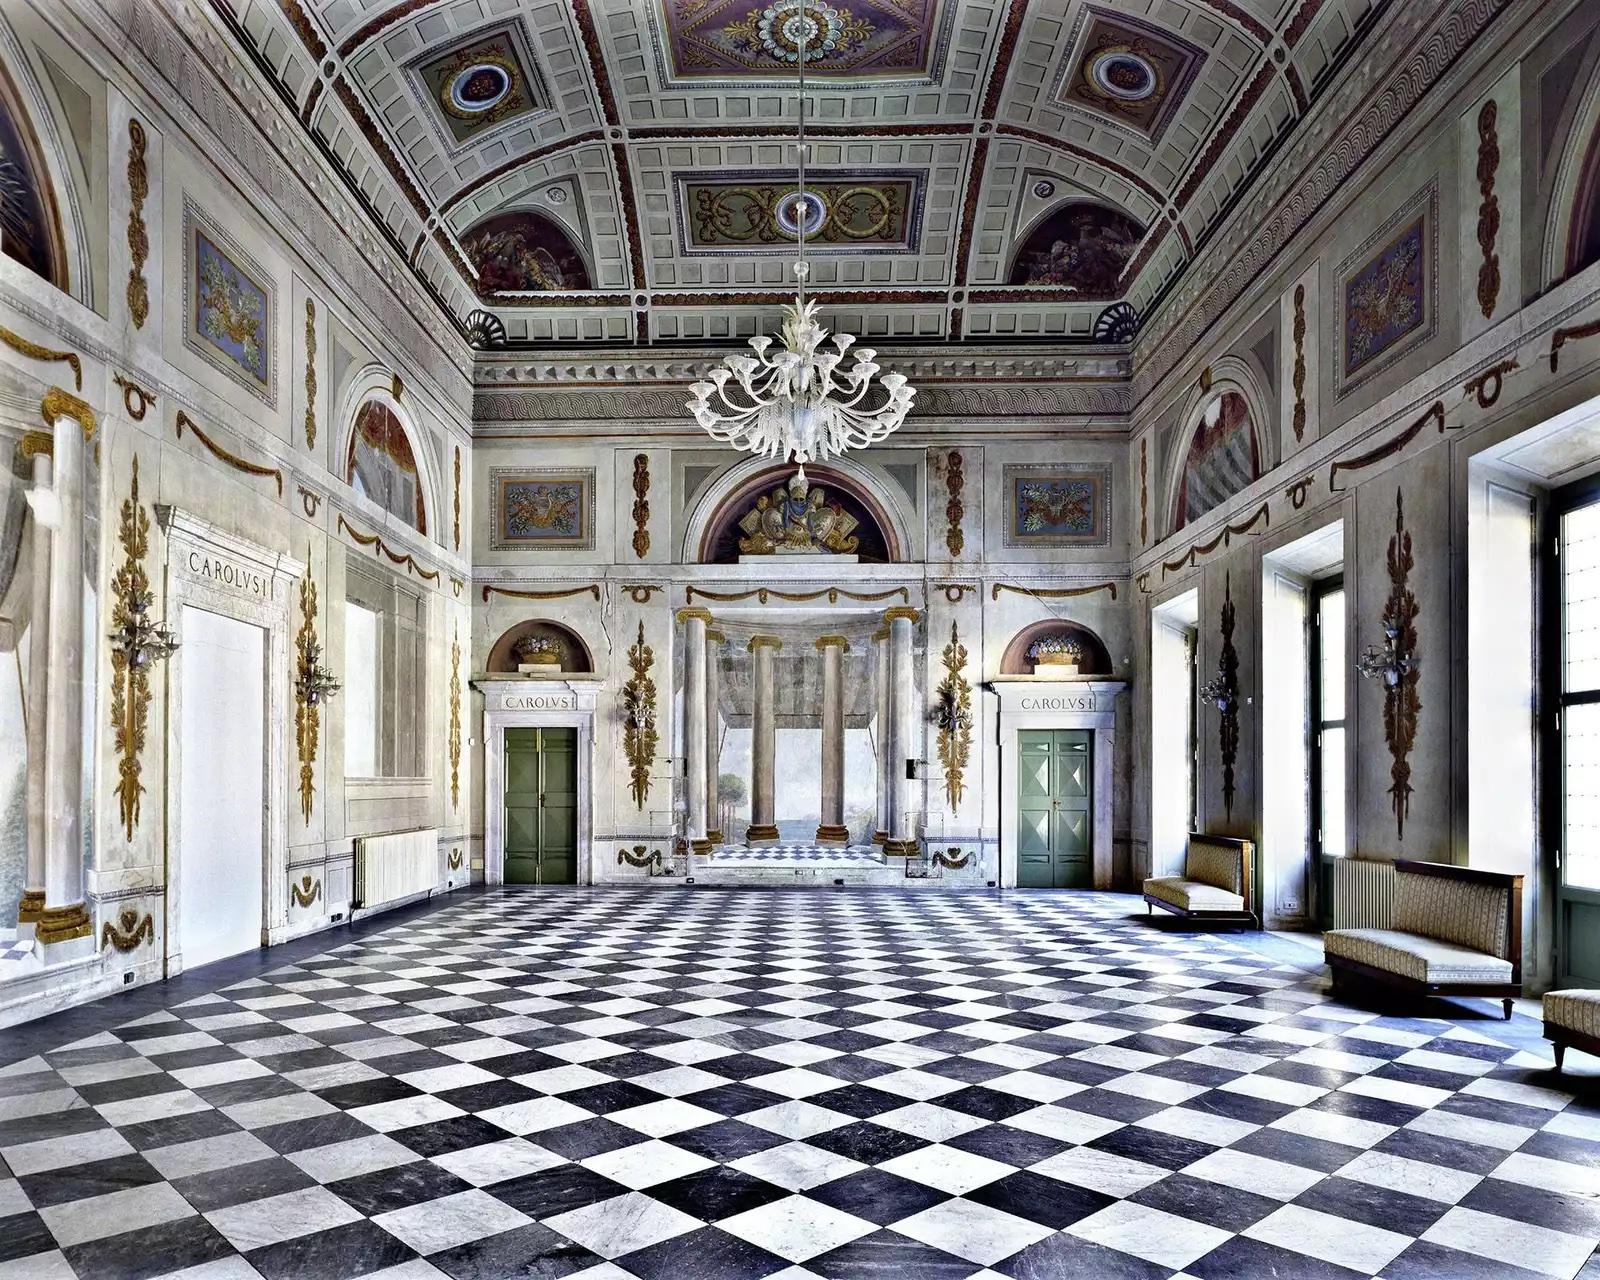 Palazzo Ducale, Massa, Italie, 1999
Tirage chromogène
100 x 120 cm
Edition de 5

Italien, né en 1954 à Florence, Italie, basé à Florence, Italie Massimo Listri parcourt son Italie natale et le monde avec son appareil photo, photographiant de grands